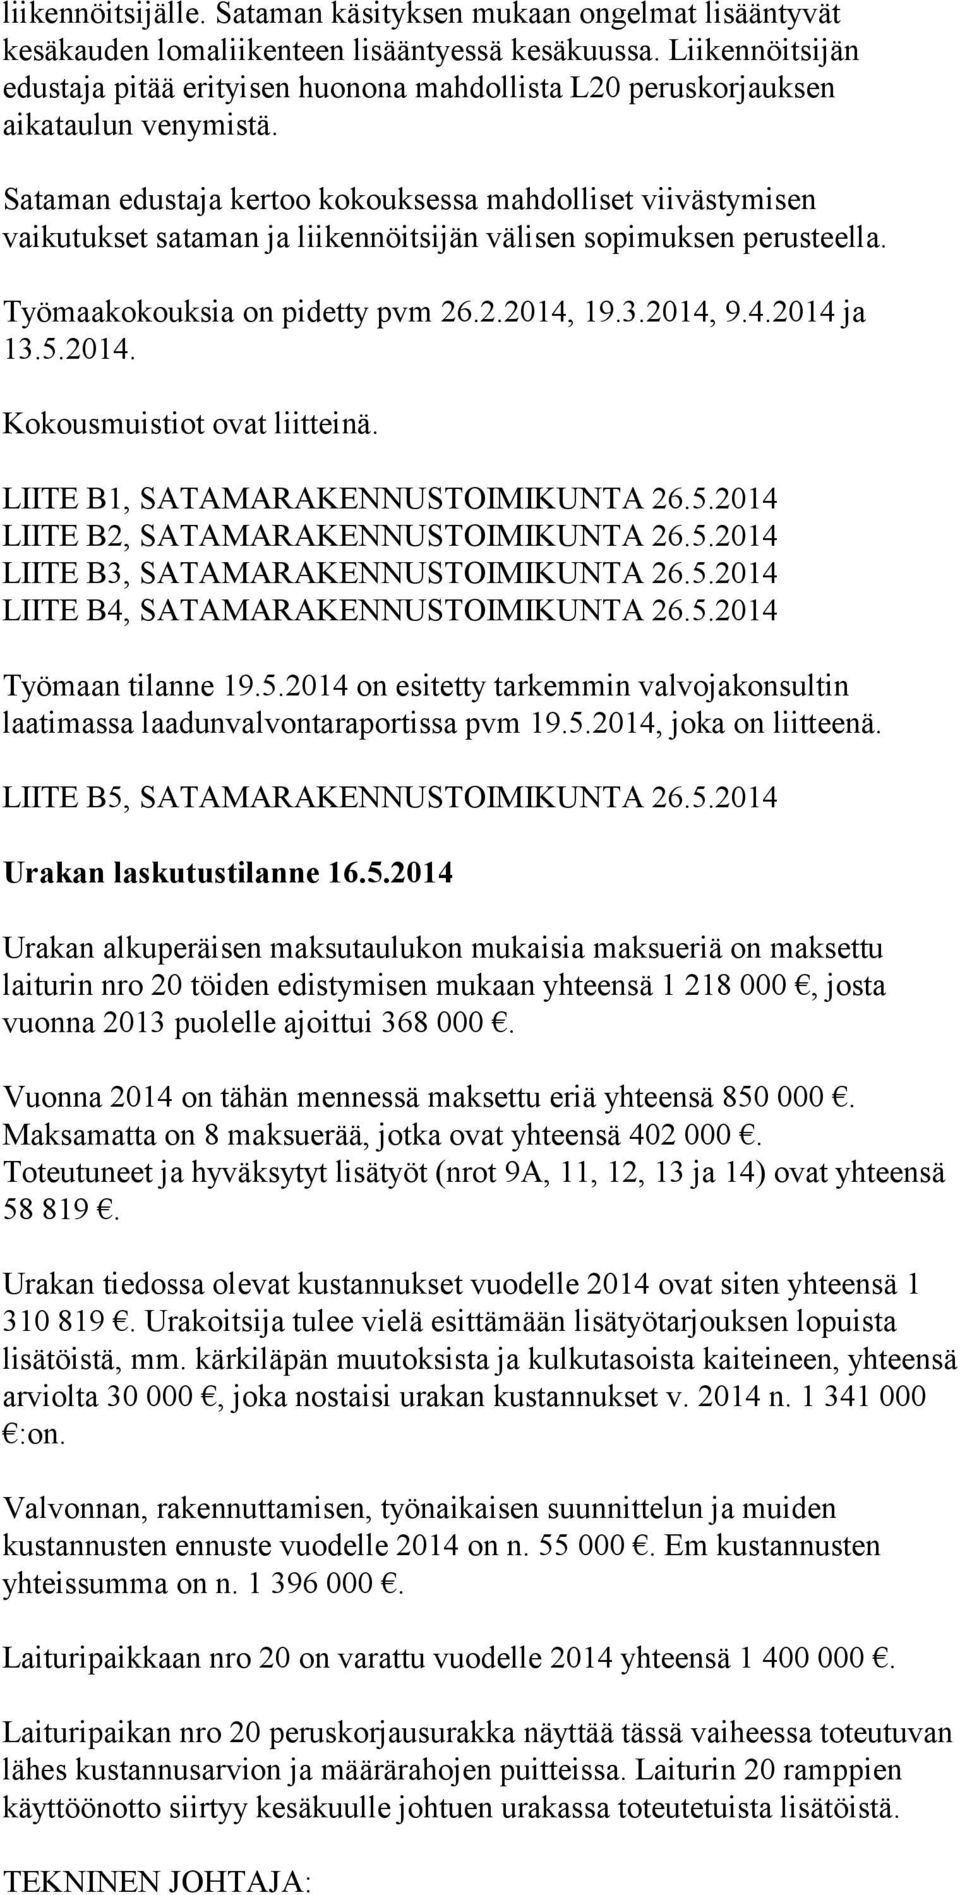 Sataman edustaja kertoo kokouksessa mahdolliset viivästymisen vaikutukset sataman ja liikennöitsijän välisen sopimuksen perusteella. Työmaakokouksia on pidetty pvm 26.2.2014, 19.3.2014, 9.4.2014 ja 13.